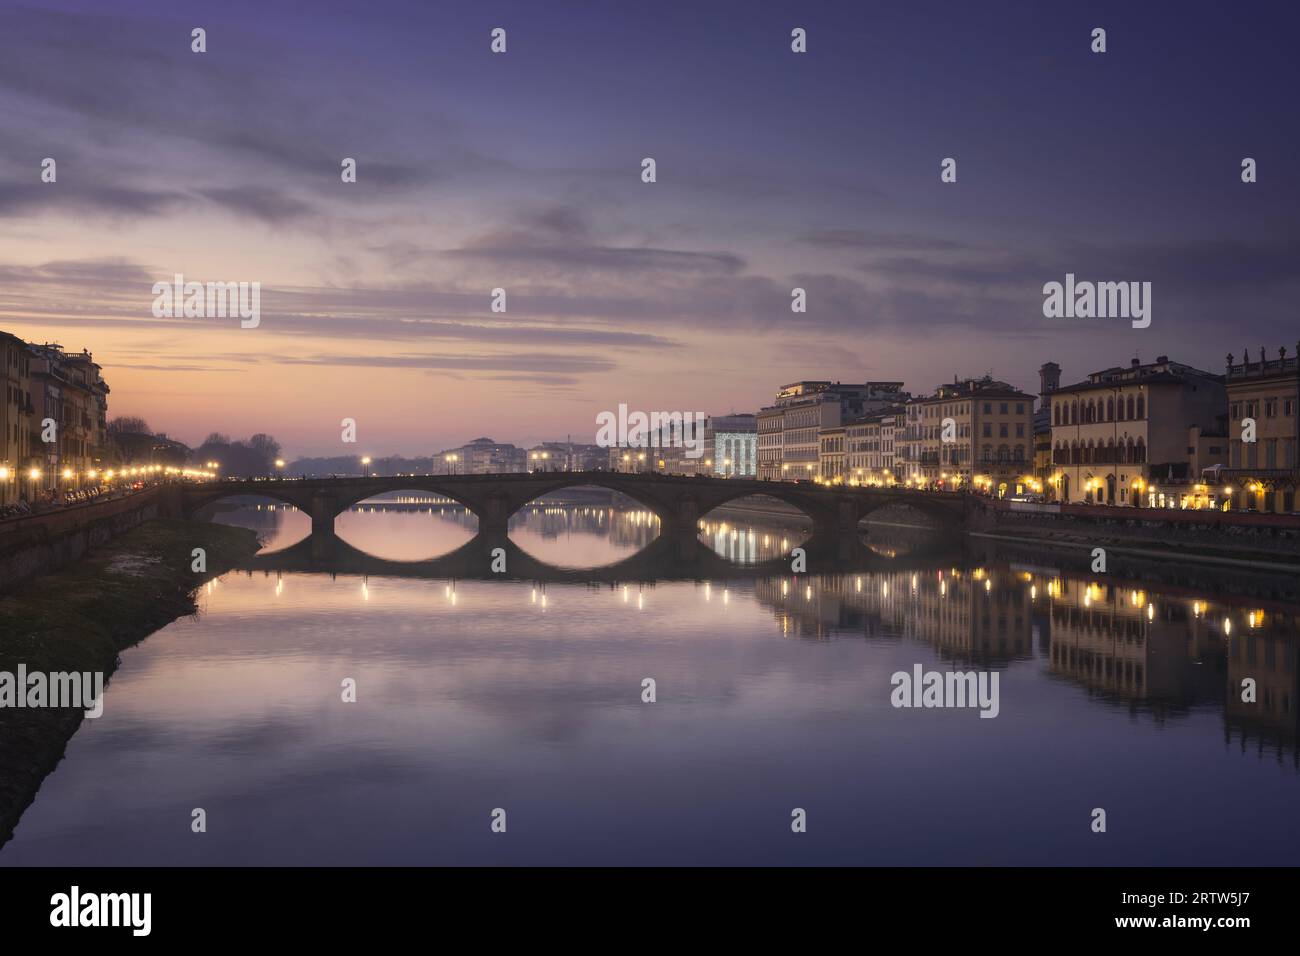 Florenz, Ponte alla Carraia mittelalterliche Brücke auf dem Arno bei Sonnenuntergang. Toskana Region, Italien. Stockfoto